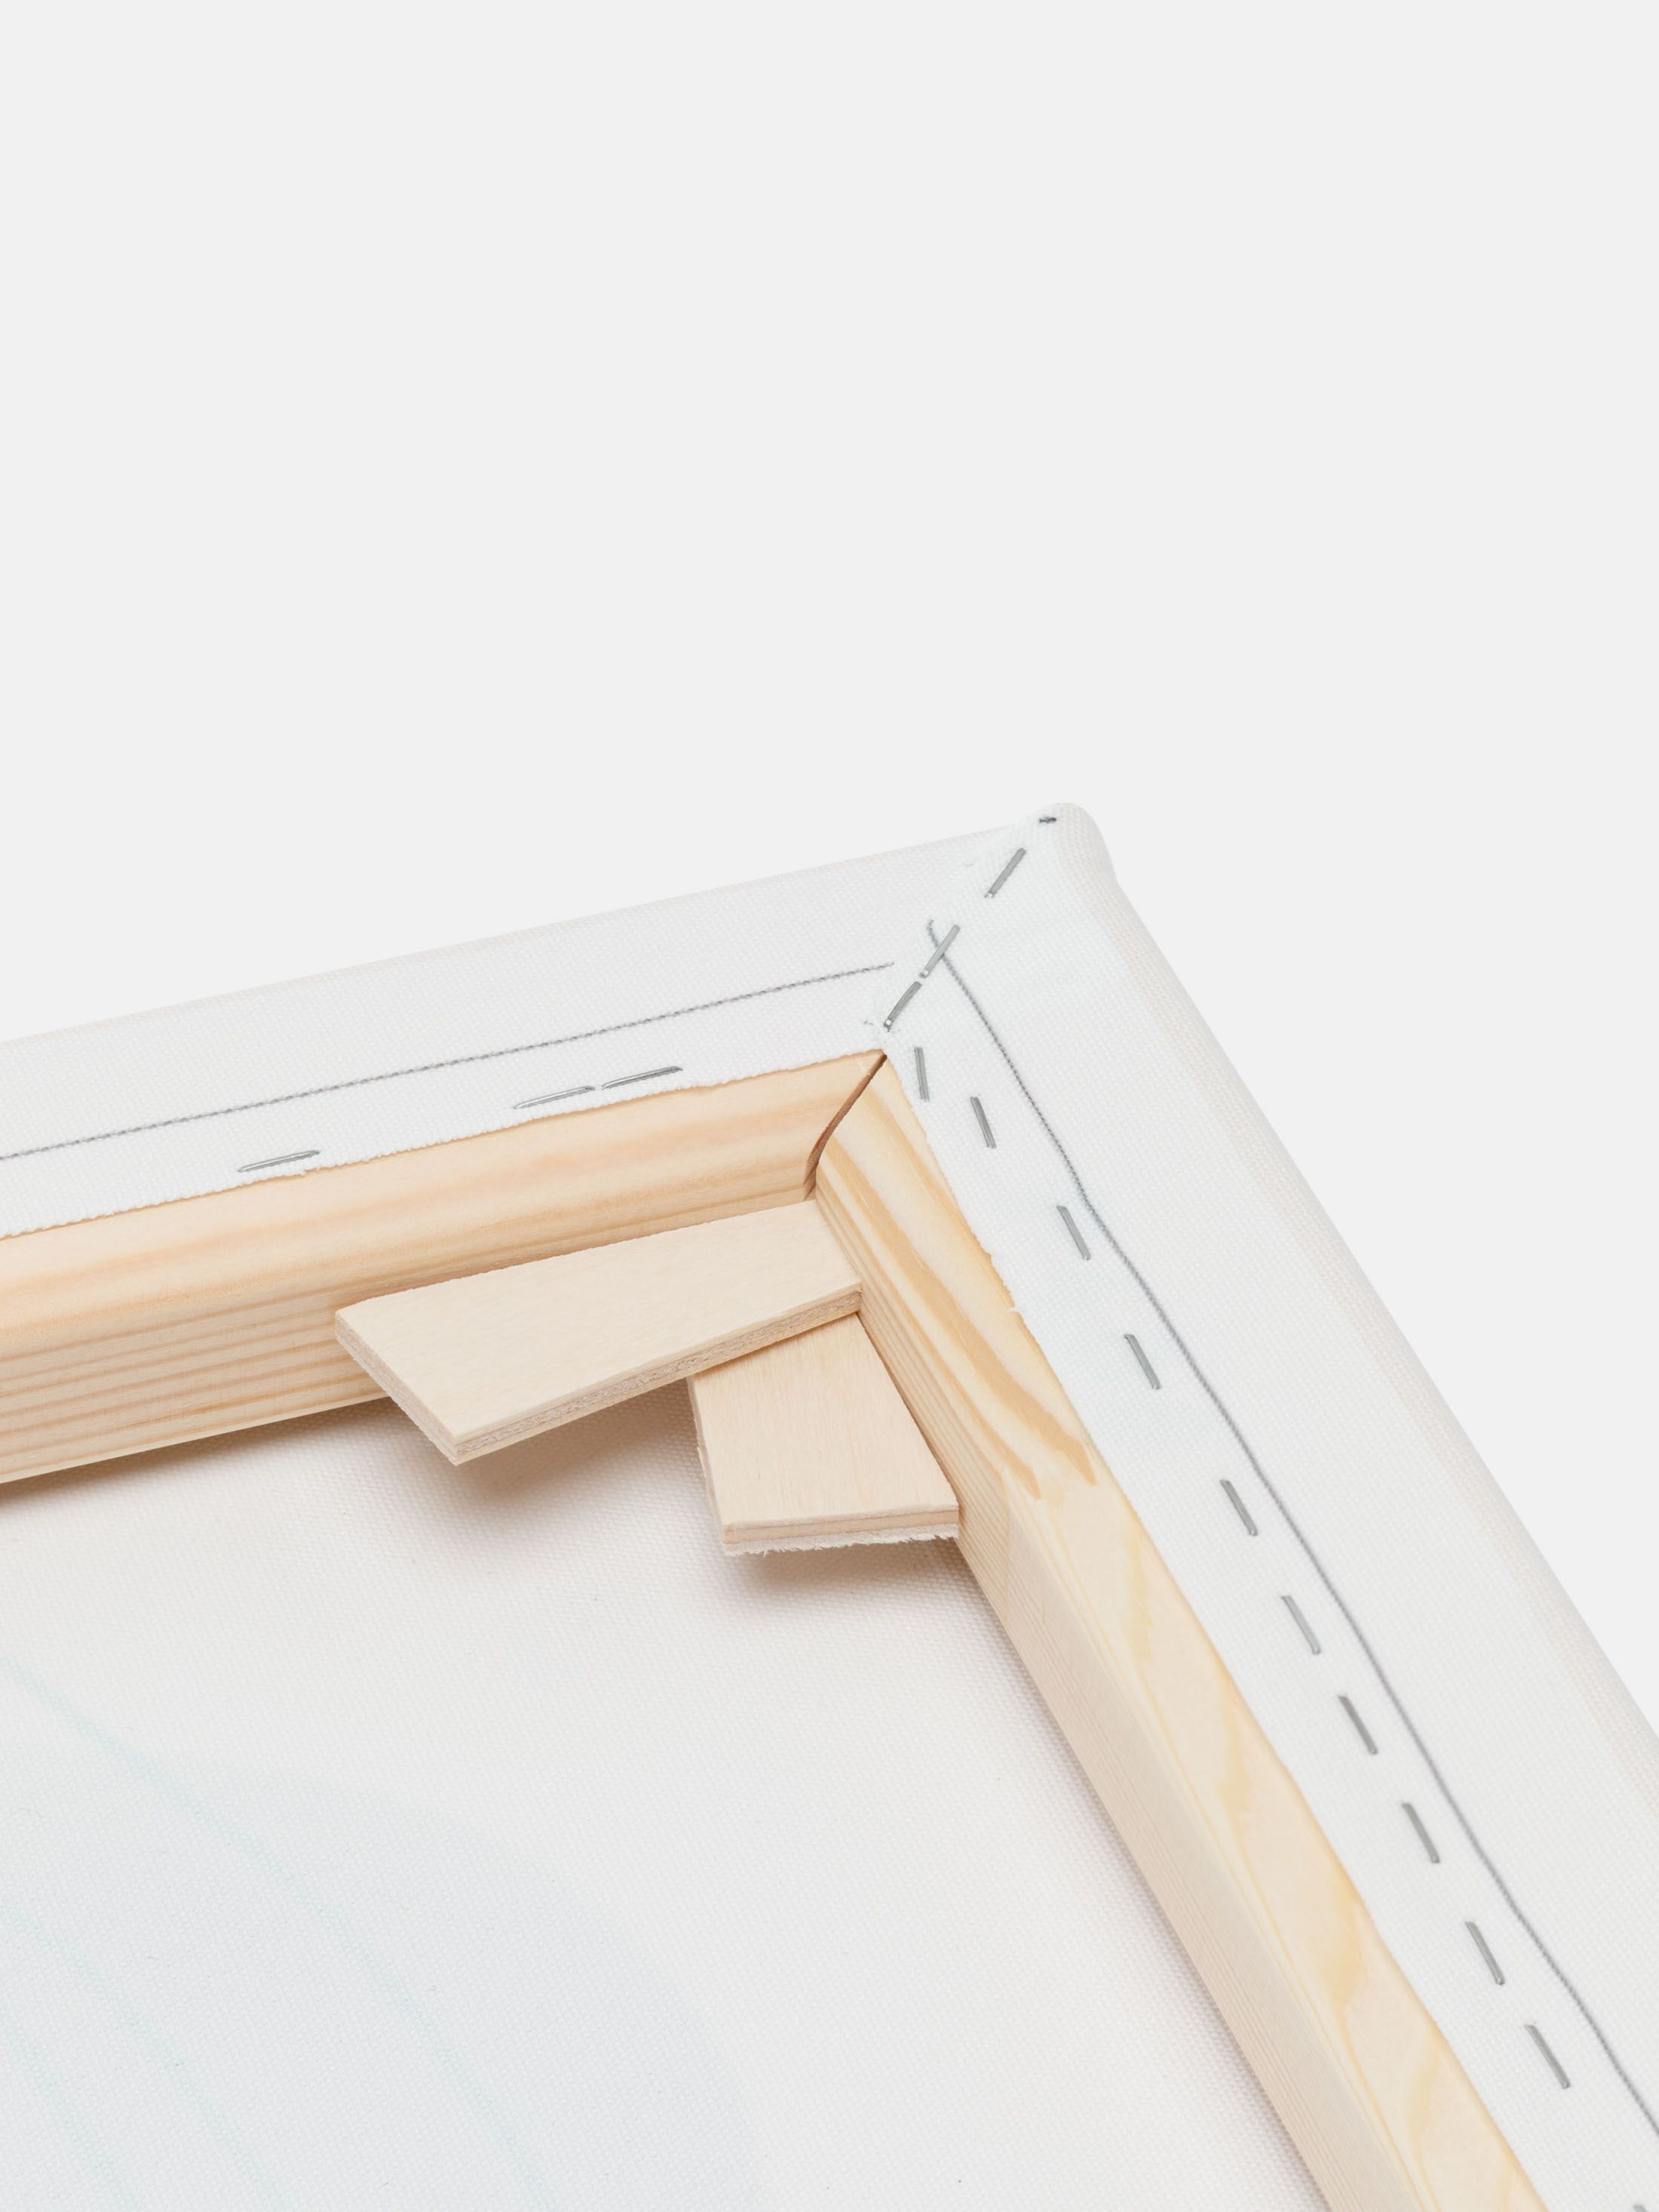 corner details of wooden frame